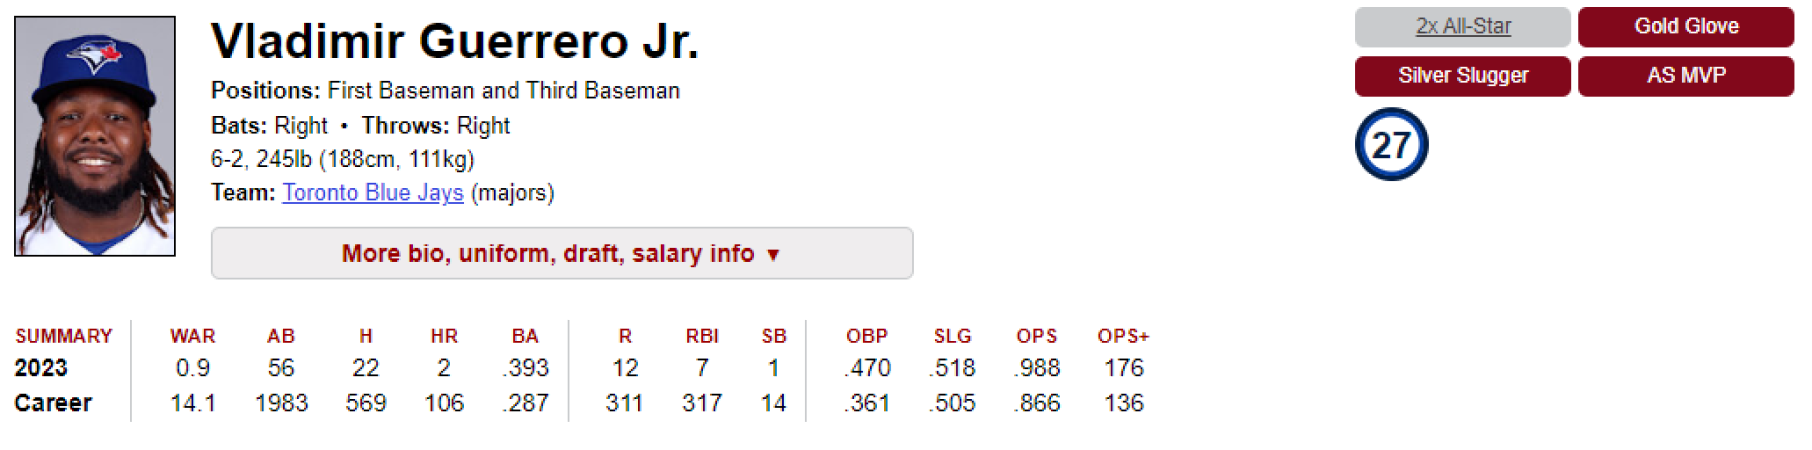 Estas son las estadísticas de Vladimir Guerrero Jr. en lo que va de temporada 2023. / Fuente: BaseballReference.com